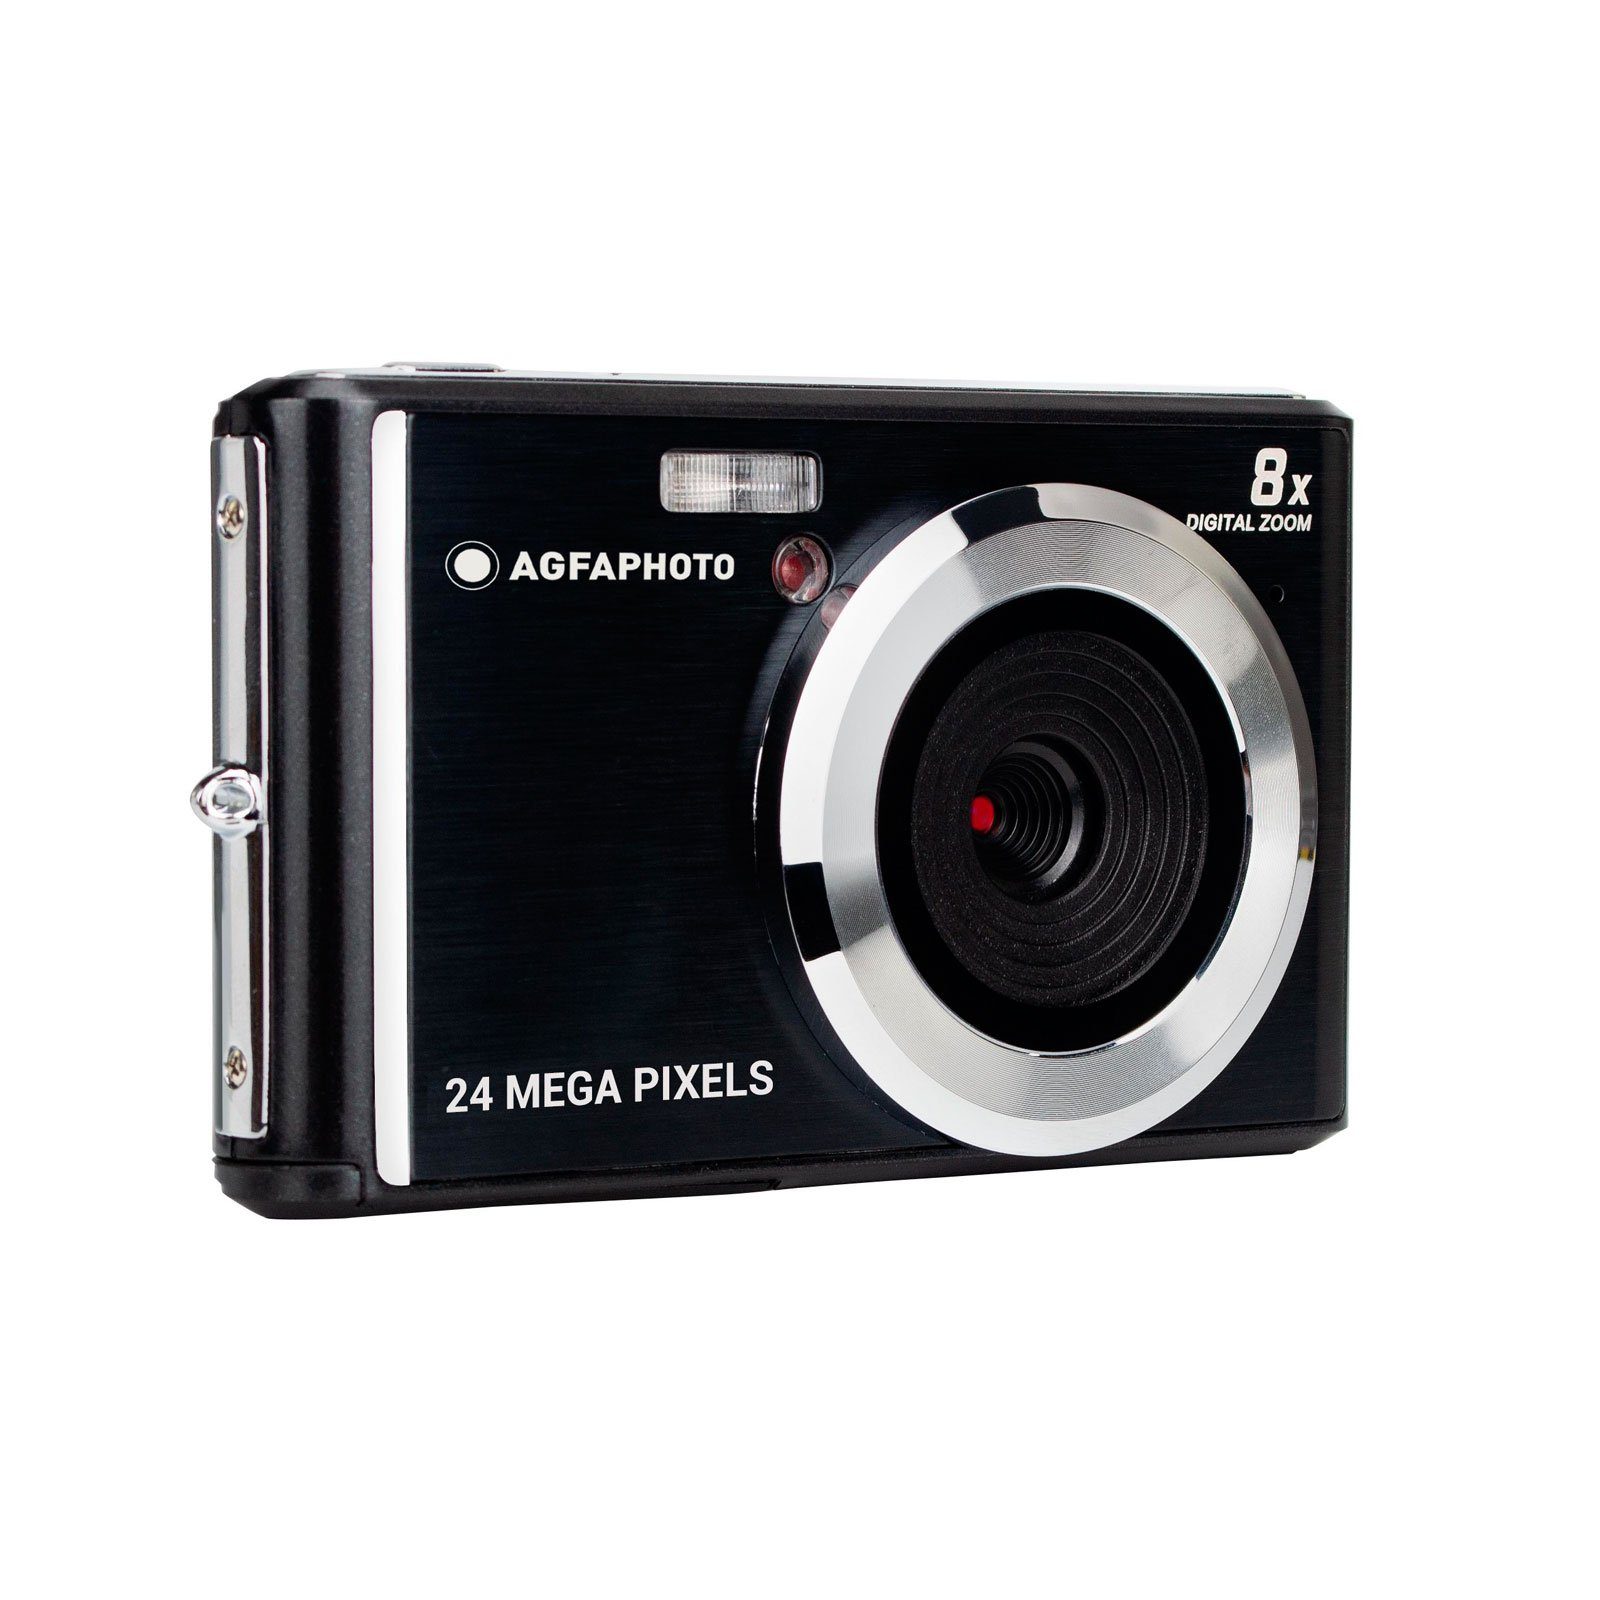 Schwarz DC5500 m, 720p Kompaktkamera 1,2 AGFA High-Definition-Videoaufnahme) (Stoßfest bis zu